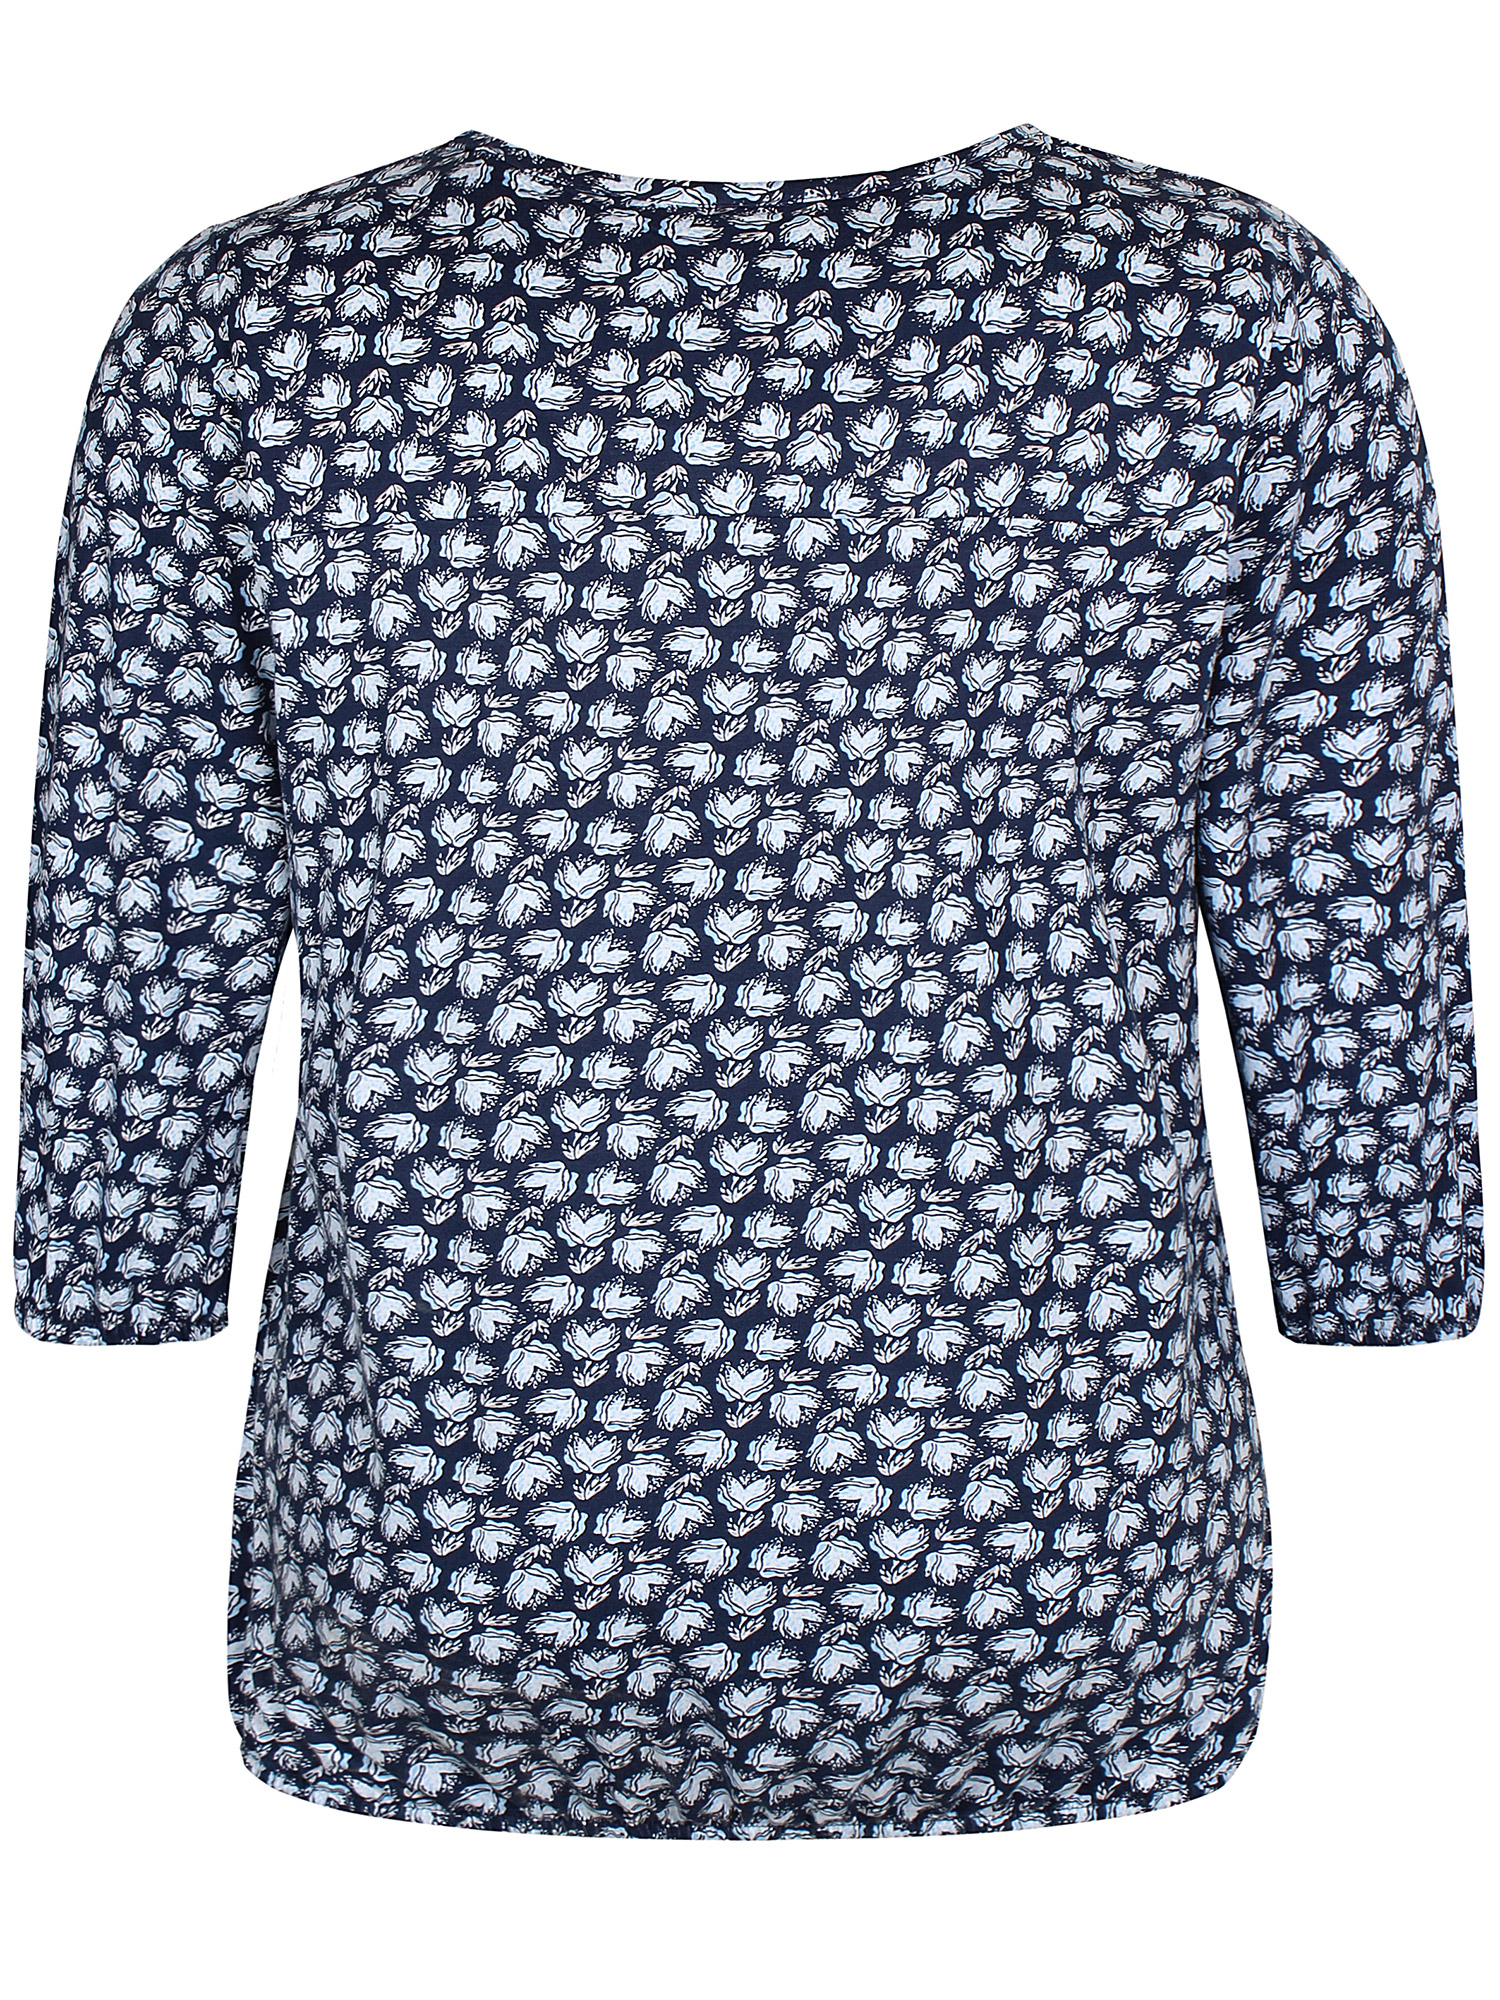 SYLVA - Blå jersey bluse med elastikkant fra Zhenzi